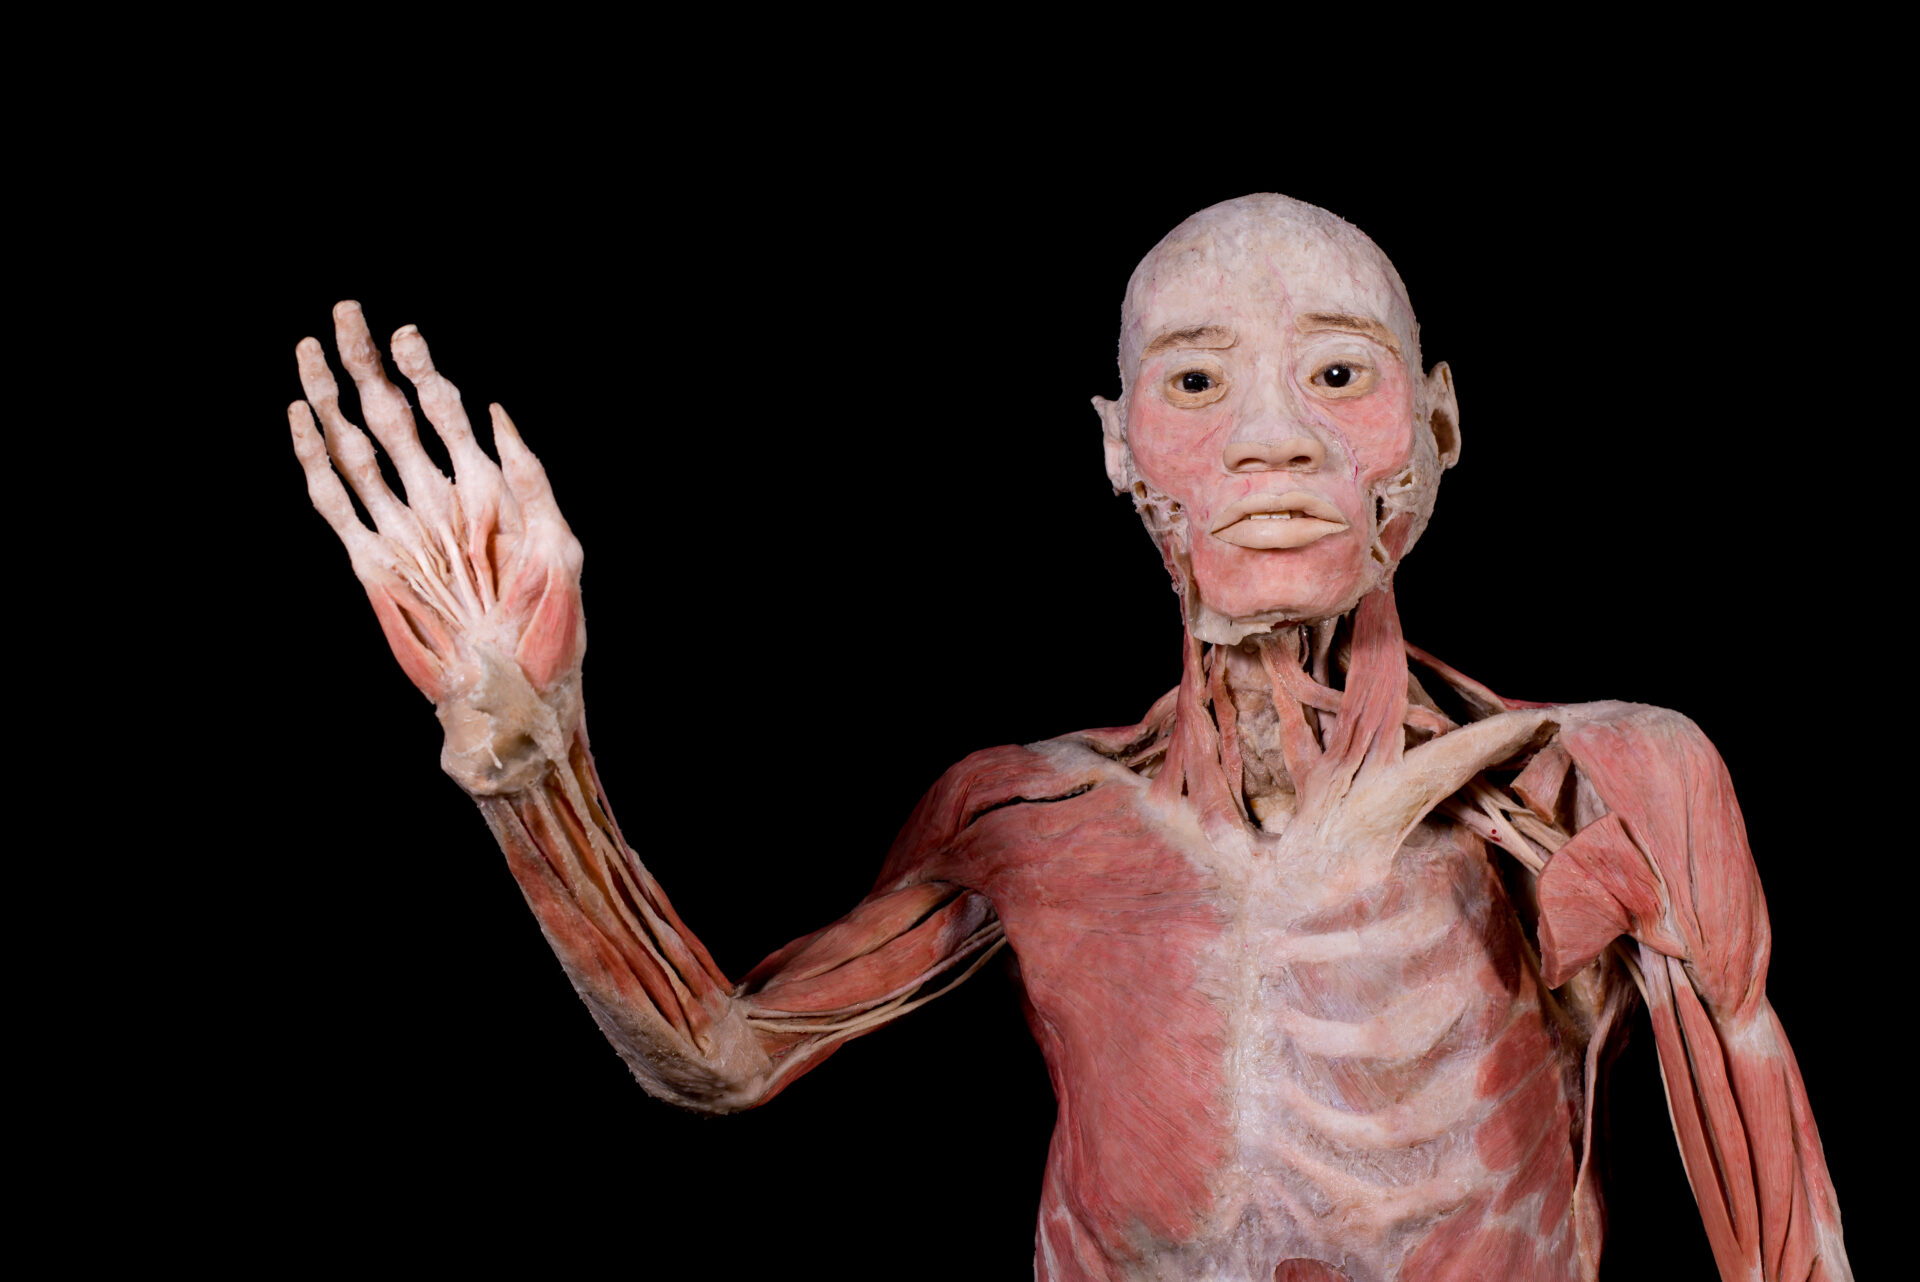 “BODIES: Cuerpos humanos reales”, gran éxito con miles de visitas en primeras semanas en RD